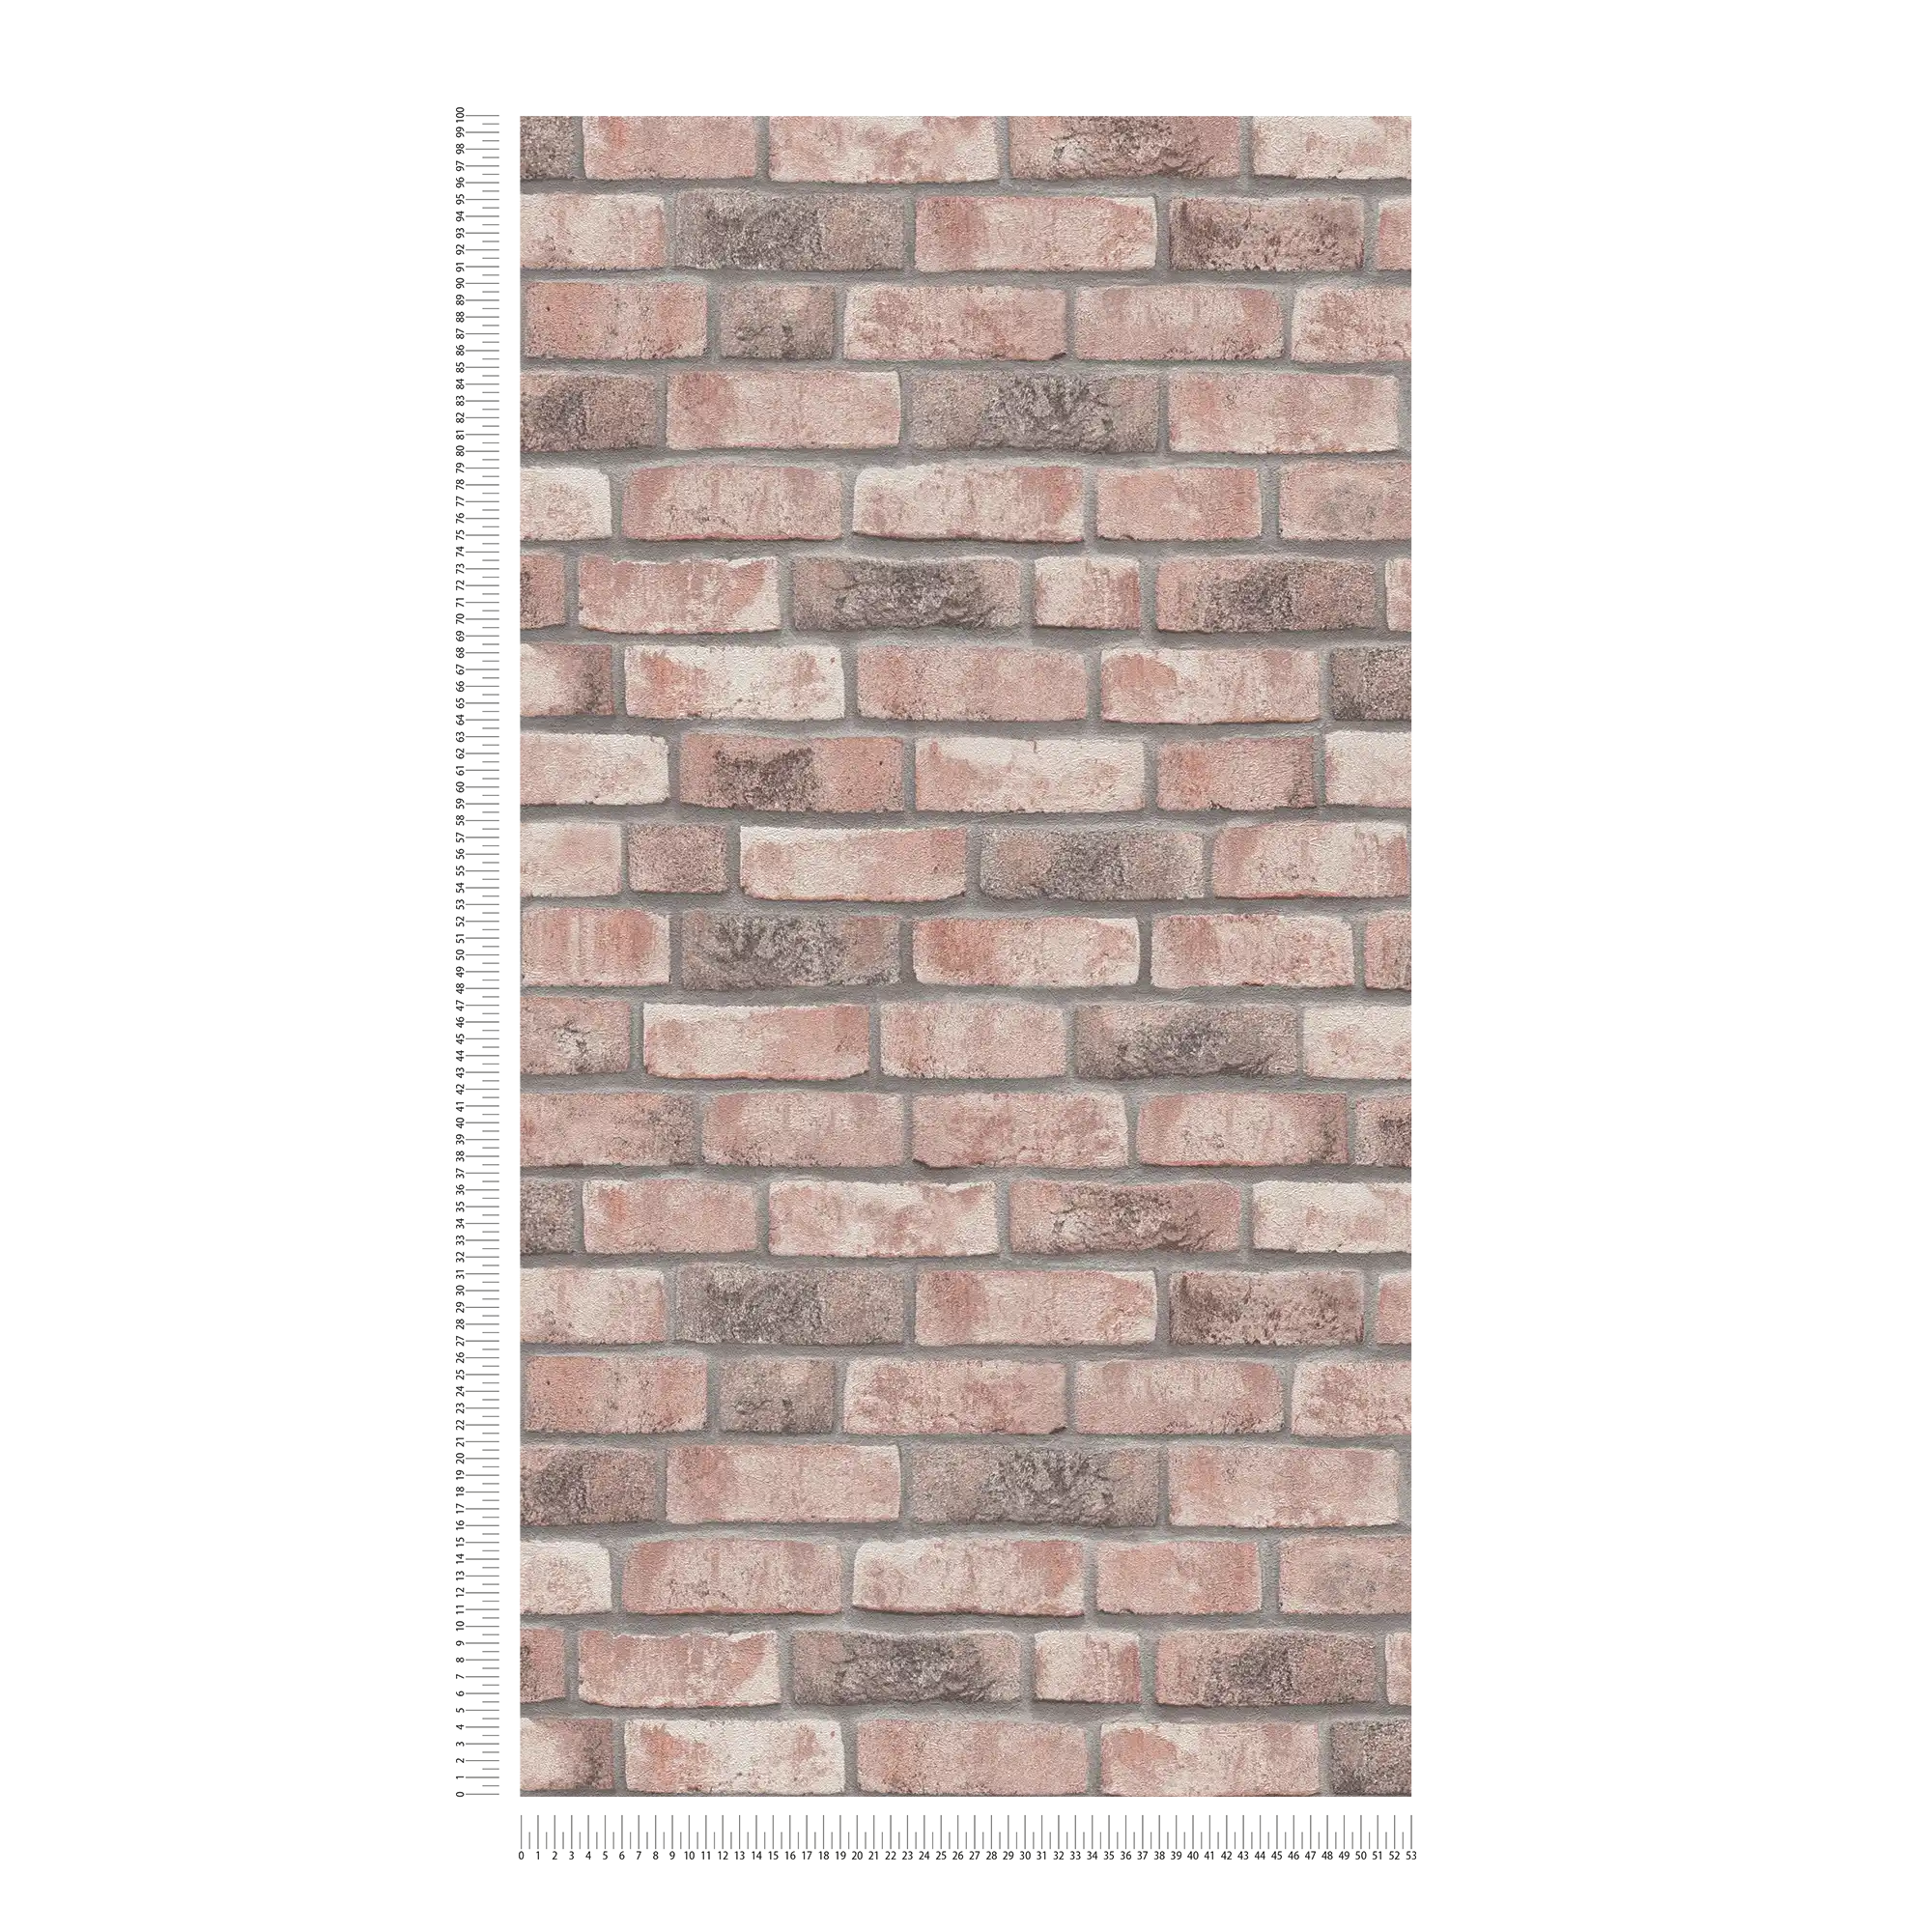             Wallpaper with brick motif - grey, beige
        